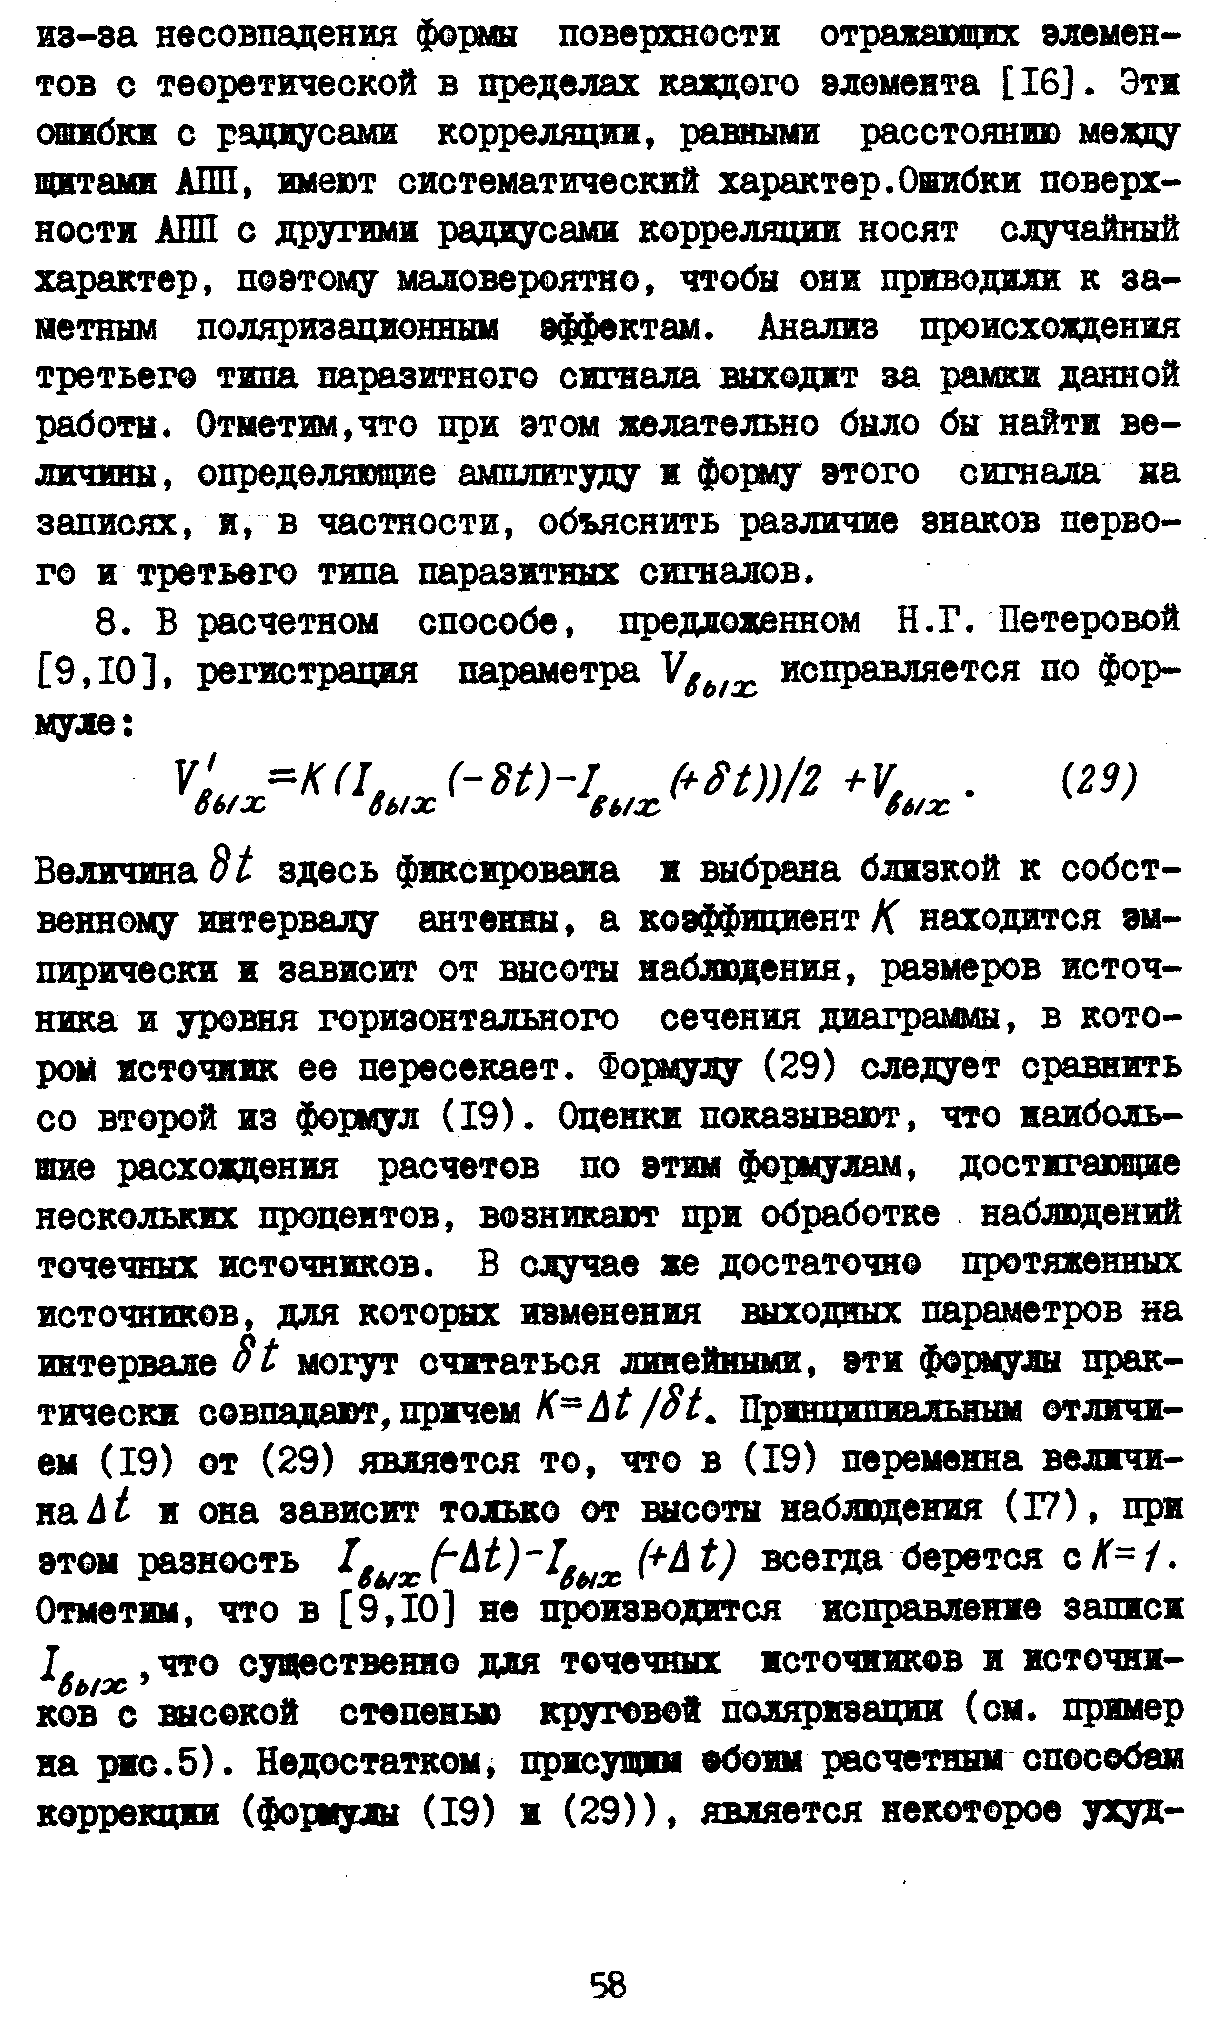 Коржавин А.Н.,стр.12